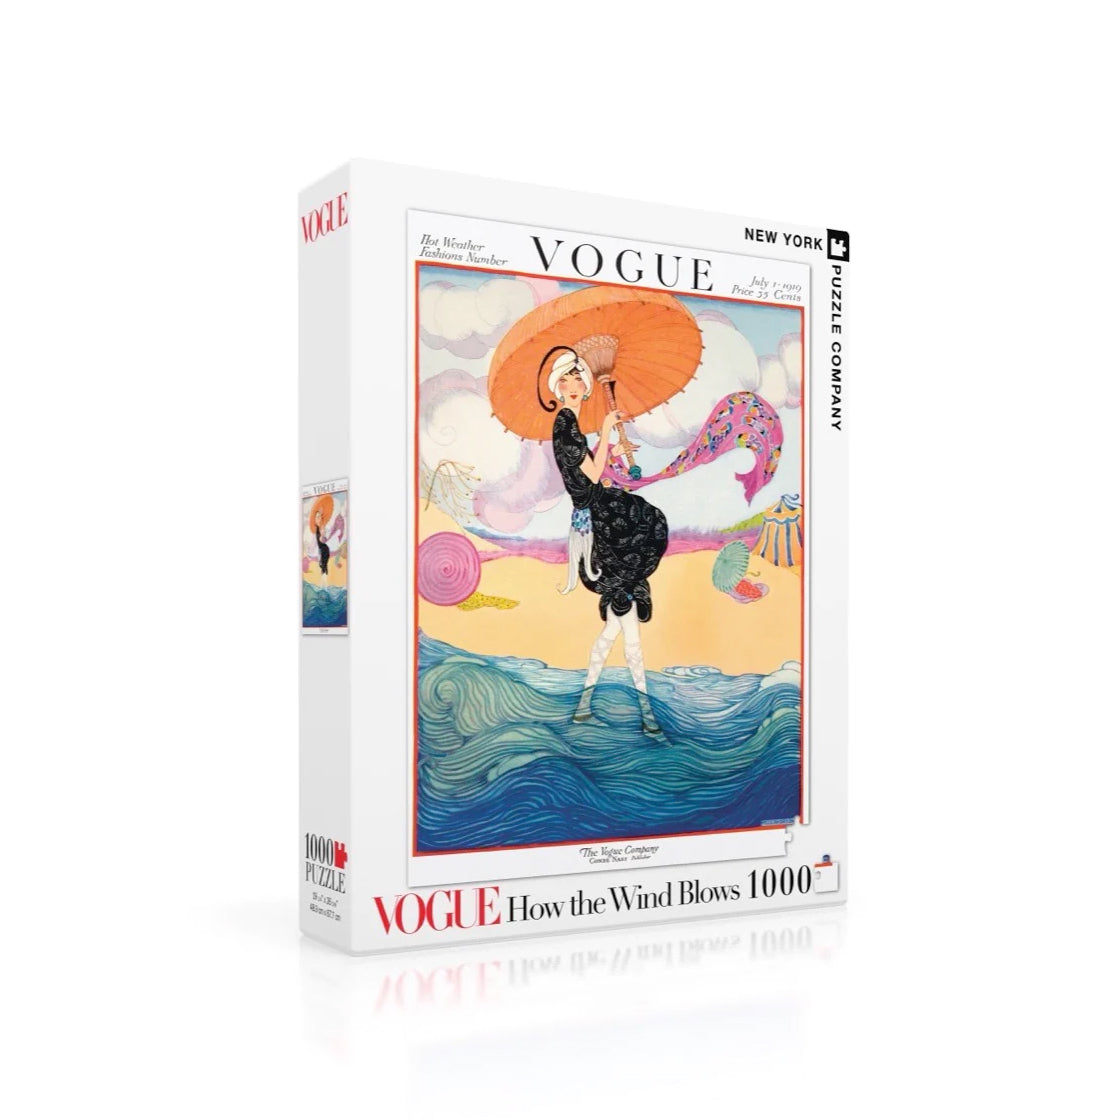 Puzzel Vogue How the Wind Blows│New York Puzzle Compane 1000 stukjes│art. NPZVG1815│verpakking met schaduw